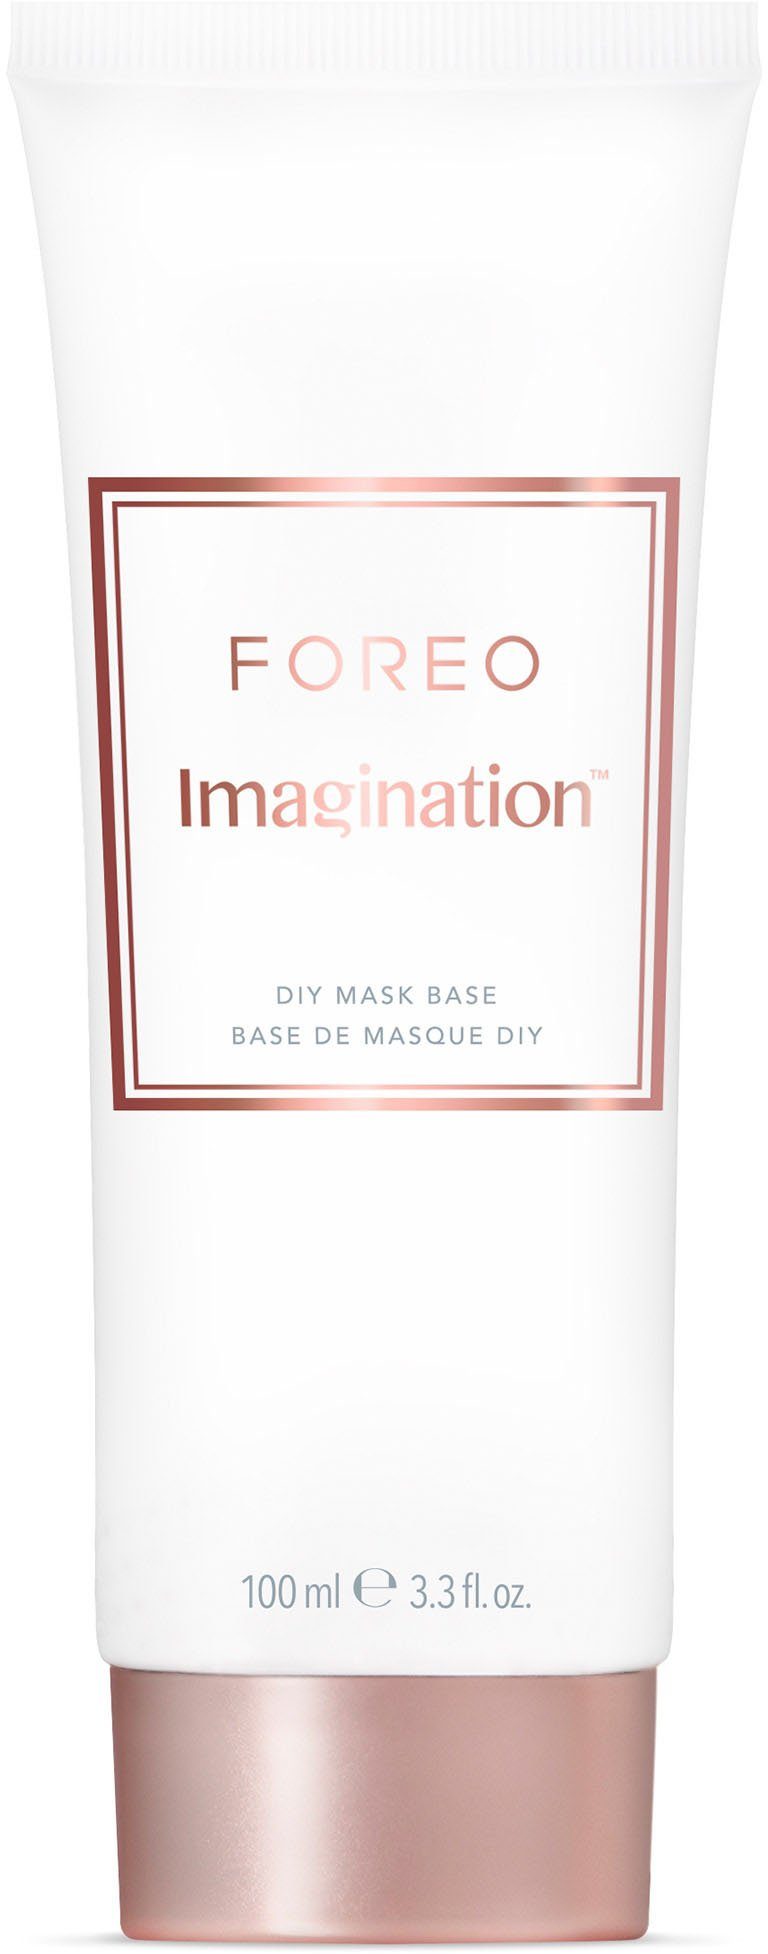 FOREO Gesichtsmaske Imagination DIY Mask 100ml Base